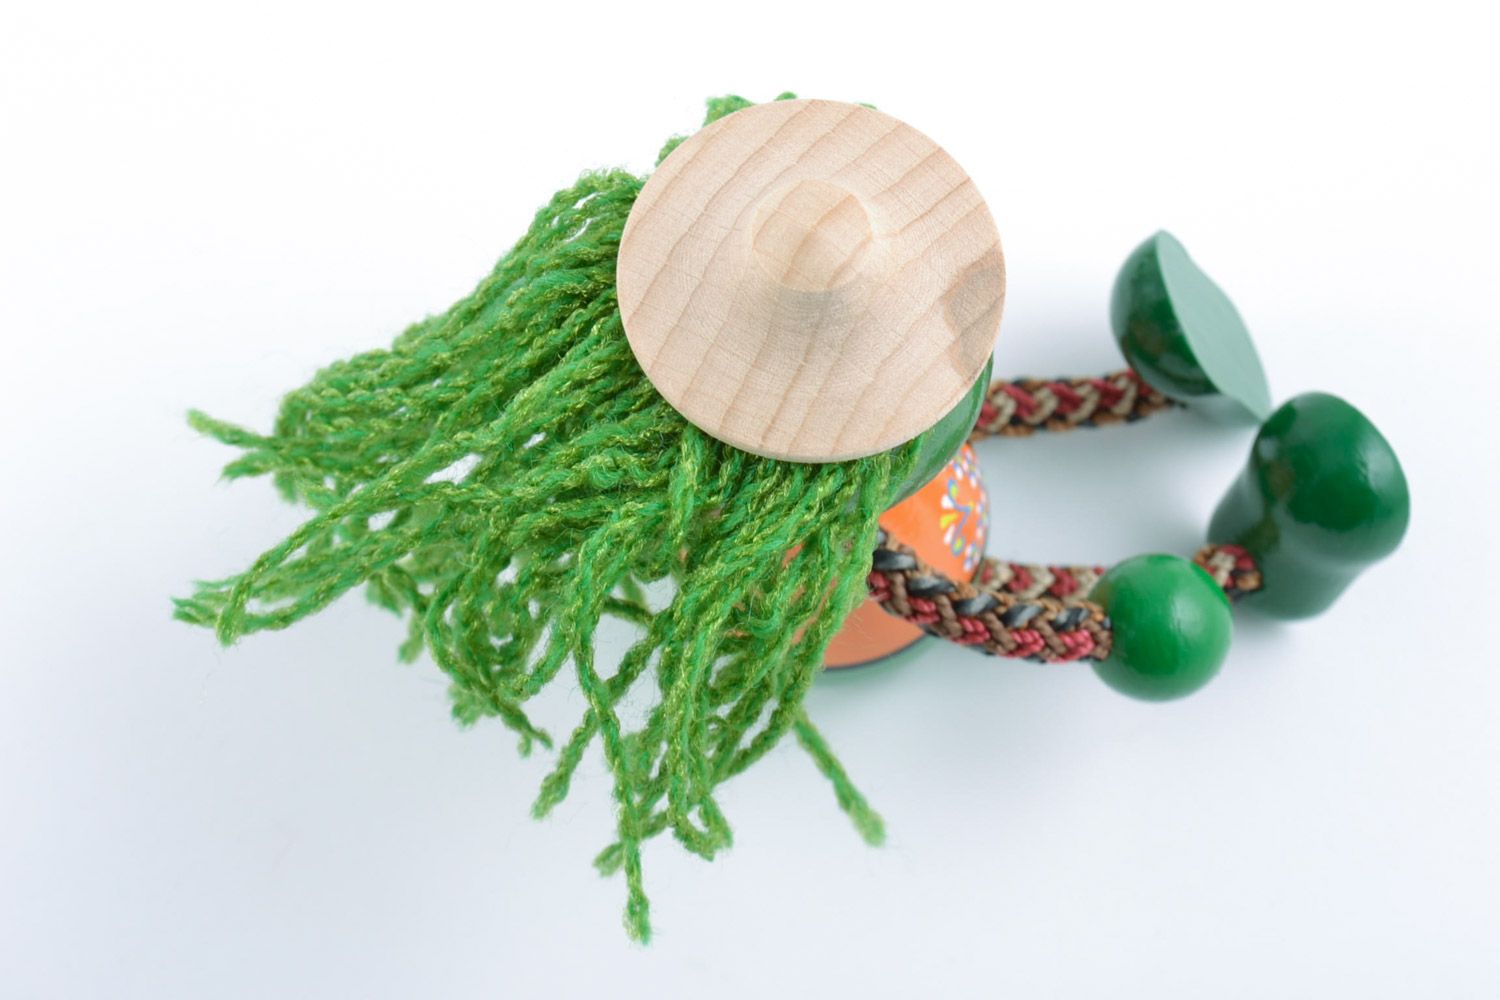 Juguete de madera con forma de rey de lago hecho a mano verde foto 5